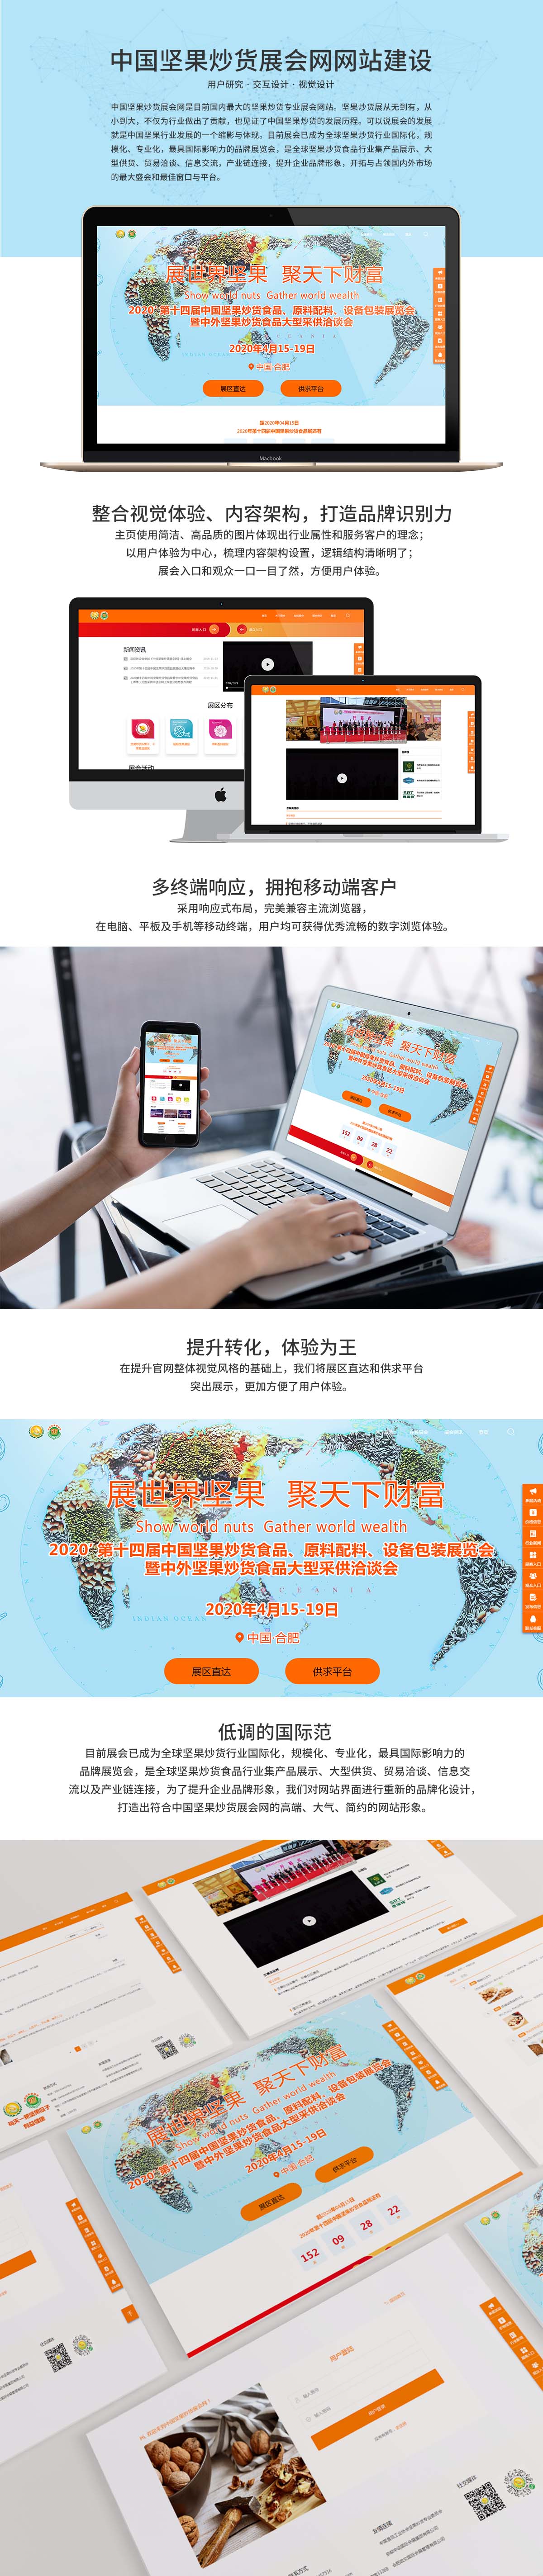 中国坚果炒货展会网建设案例